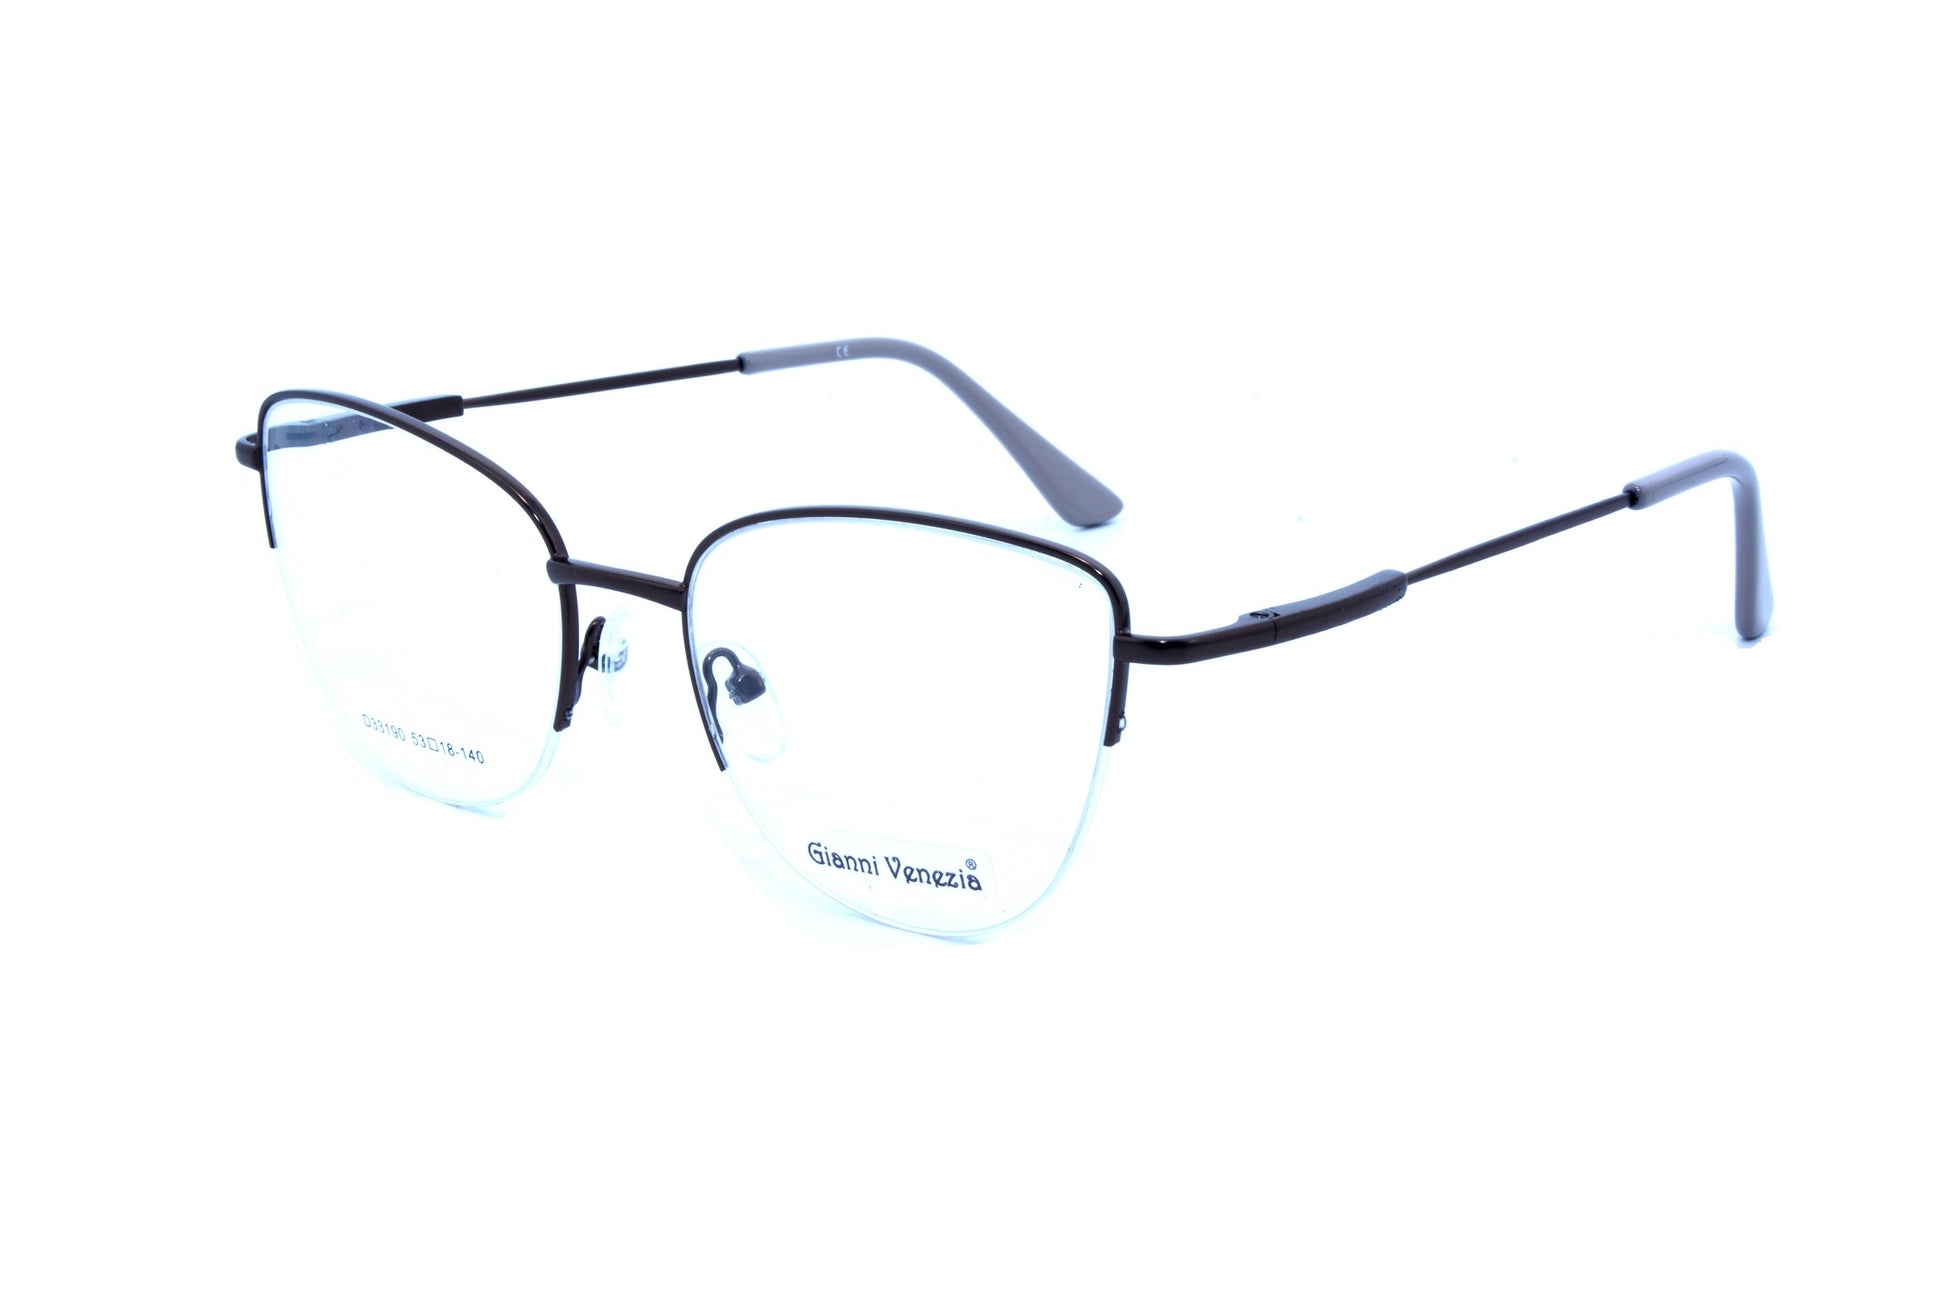 Gianni Vennezia eyewear 33190, C4 - Optics Trading